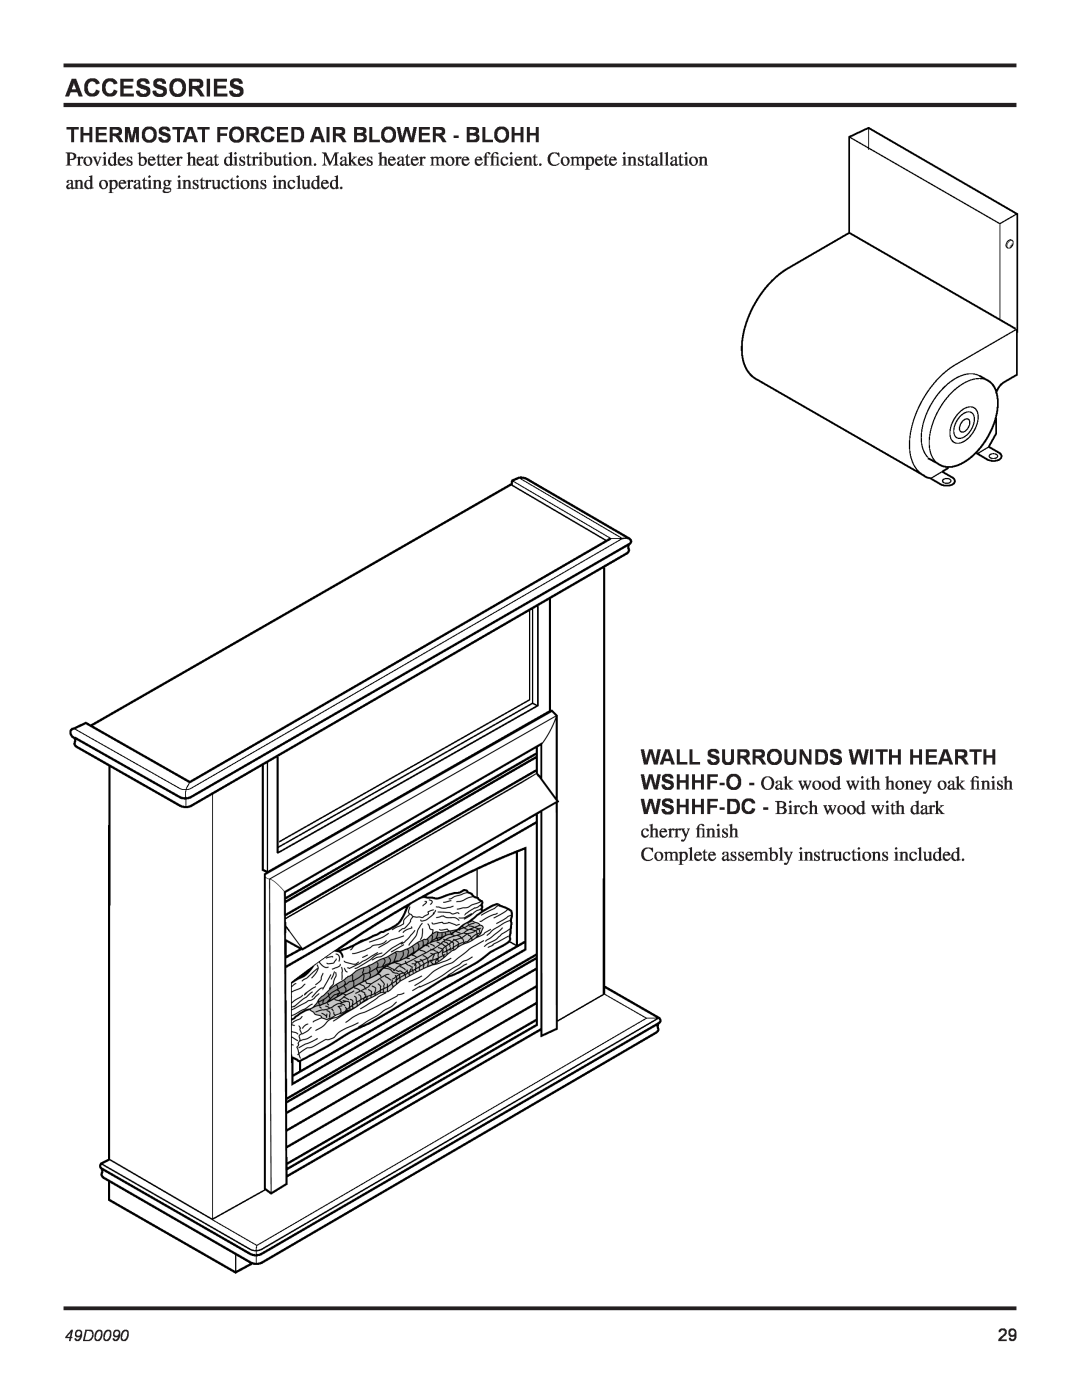 Monessen Hearth BTU/Hr installation manual Thermostat Forced Air Blower - Blohh, Accessories 